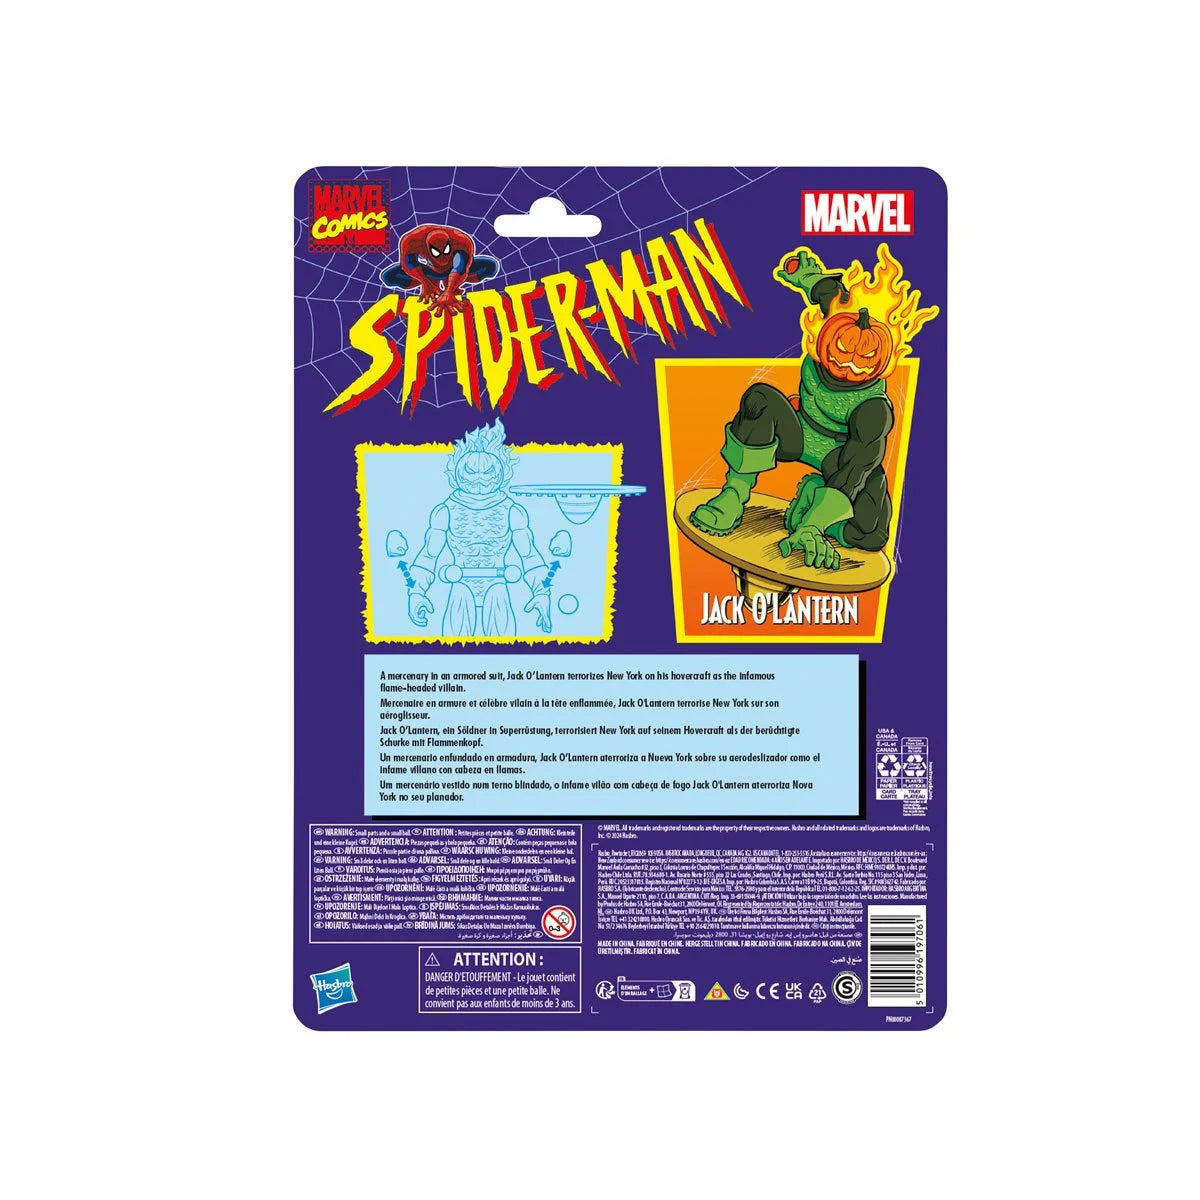 Marvel Legends Spider-Man Comic 6-inch Jack O'Lantern Action Figure